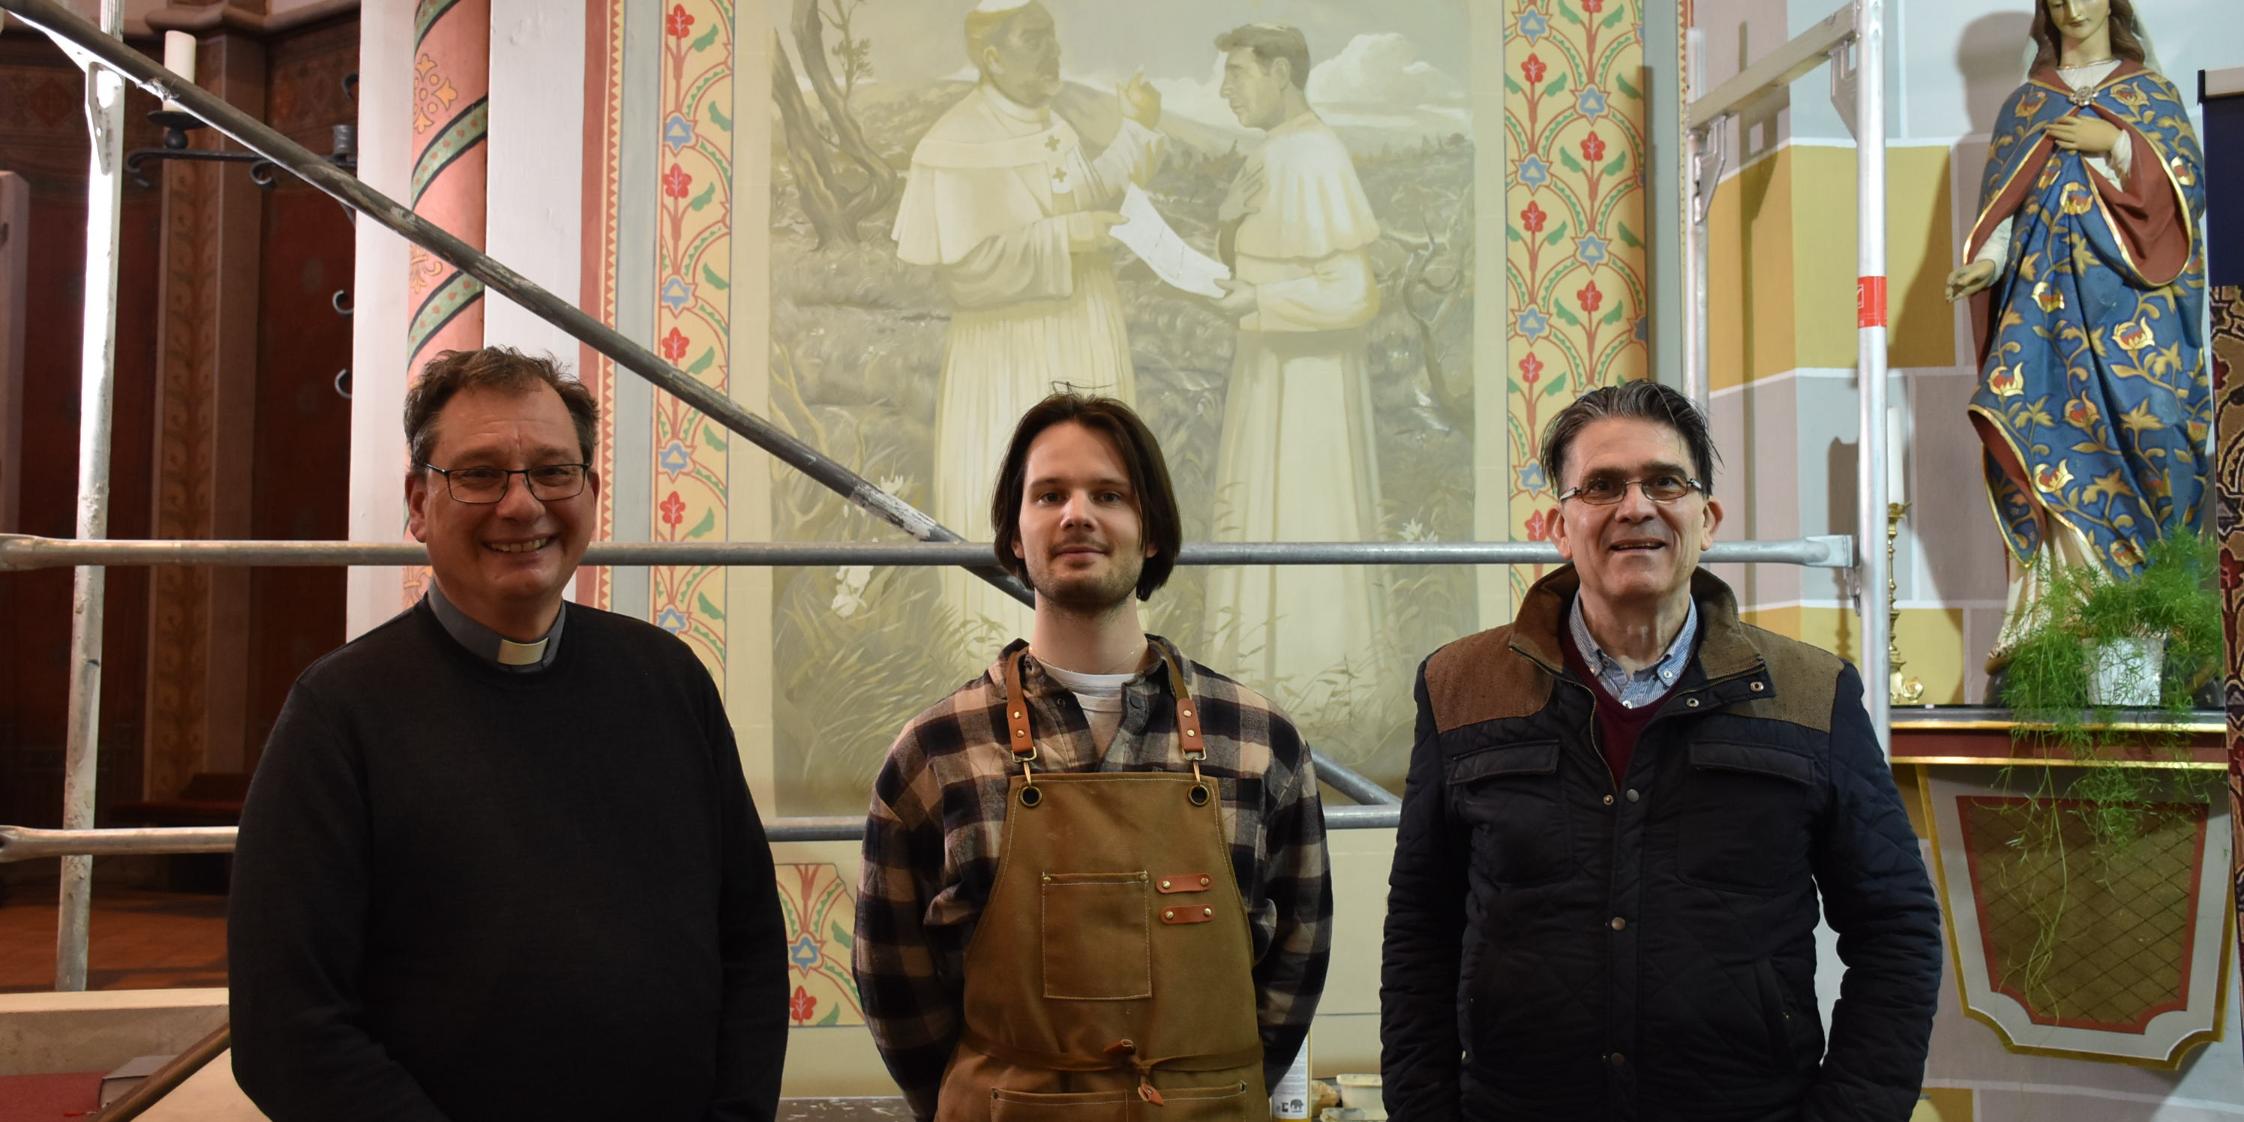 Pfarrer Peter Leick, Jonas Hammen und Patrik Feltes (von links) vor dem Bildnis, das bis Ende des Monats fertiggestellt sein soll.